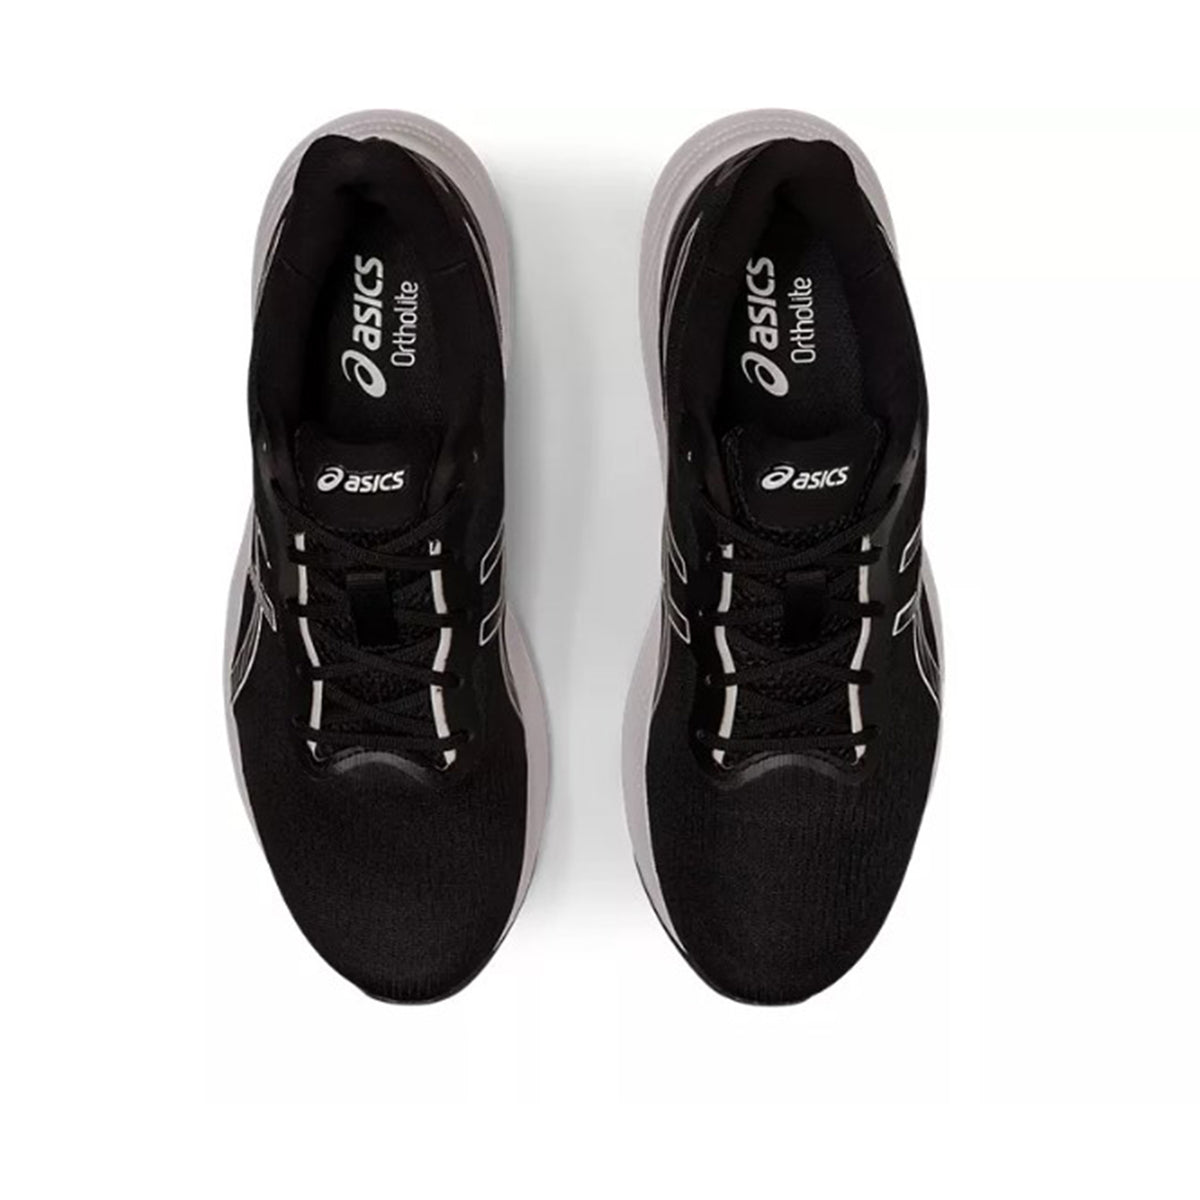 Asics Gel Pulse 14 Mens Running Shoes: Black/White